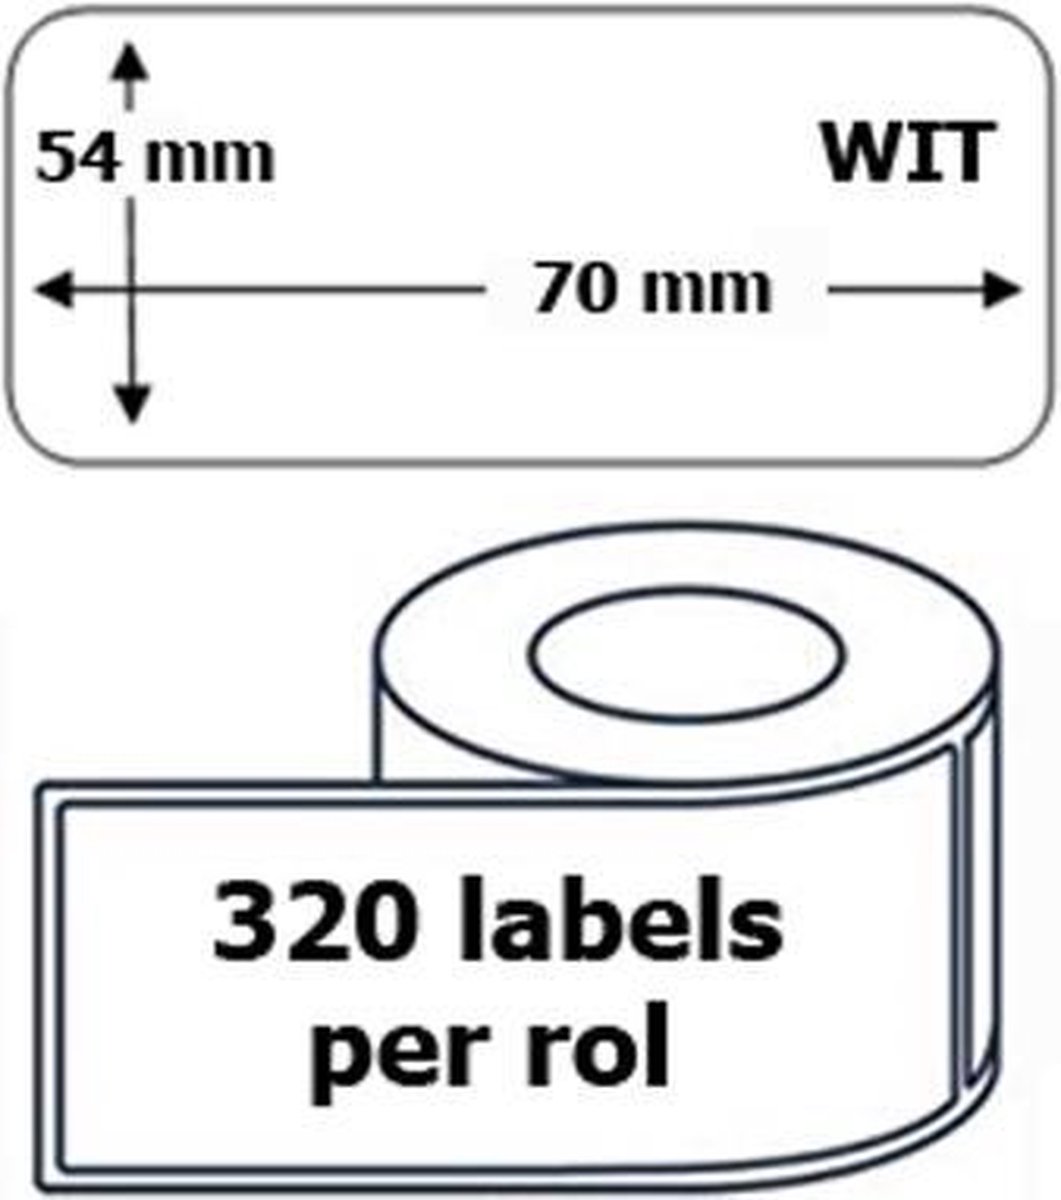 1x Dymo 99015 compatible 320 labels / 54 mm x 70 mm / wit / papier